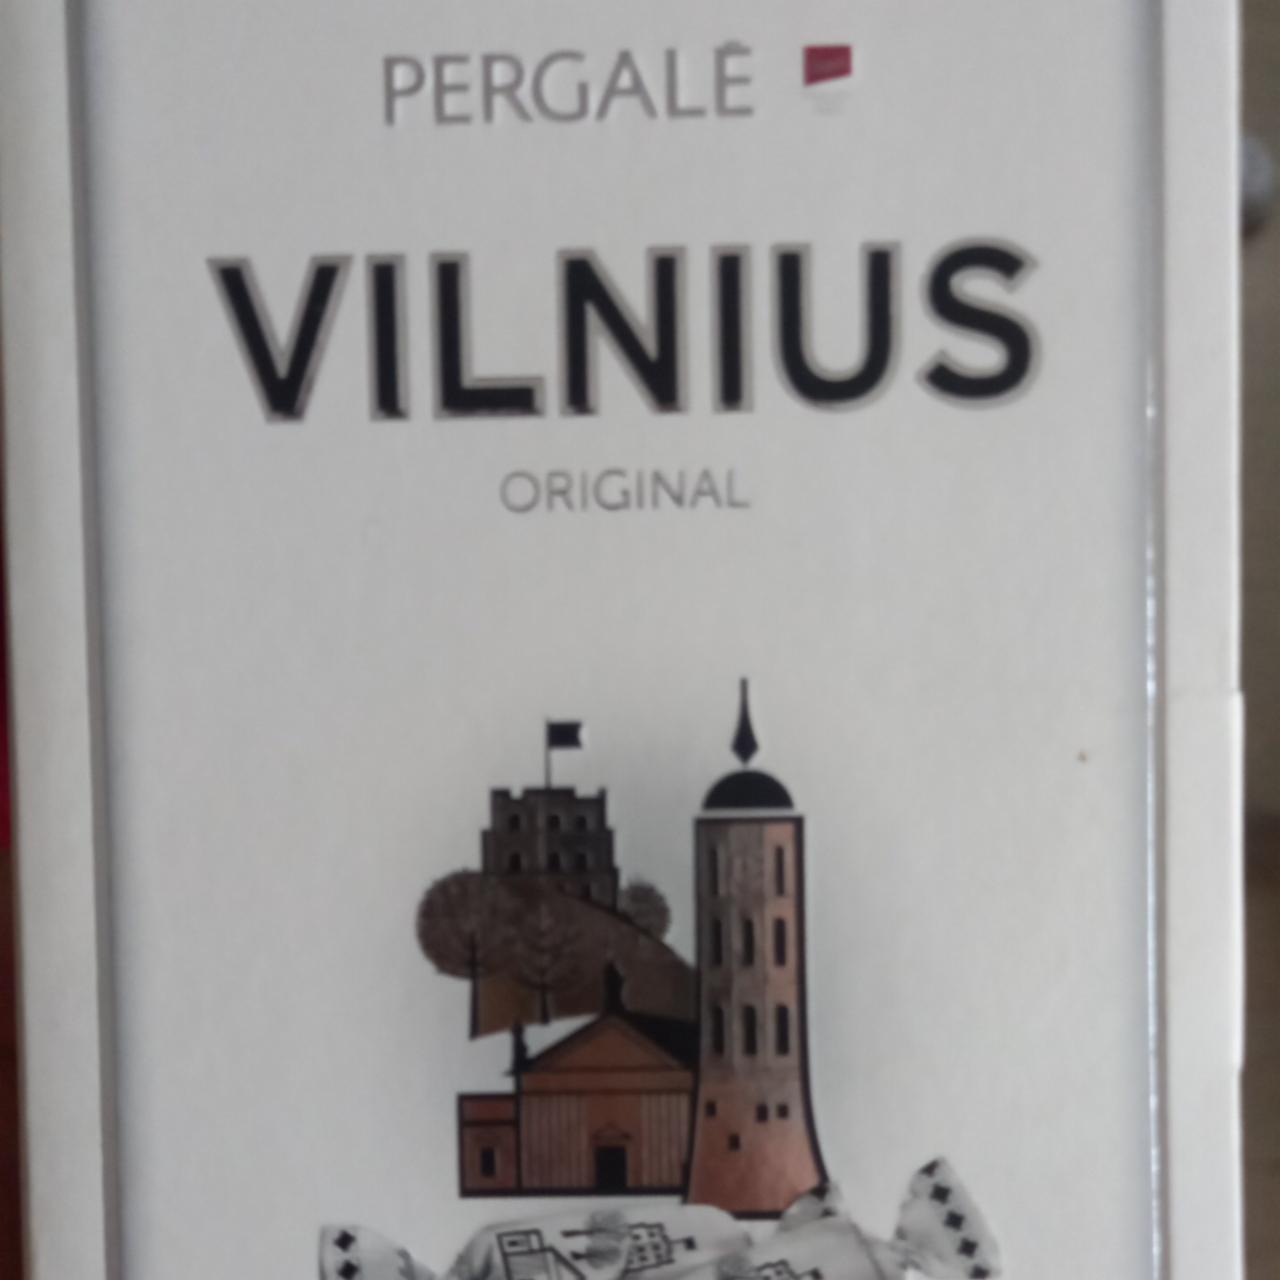 Fotografie - Pergale Vilnius Original pralinky z hořké čokolády